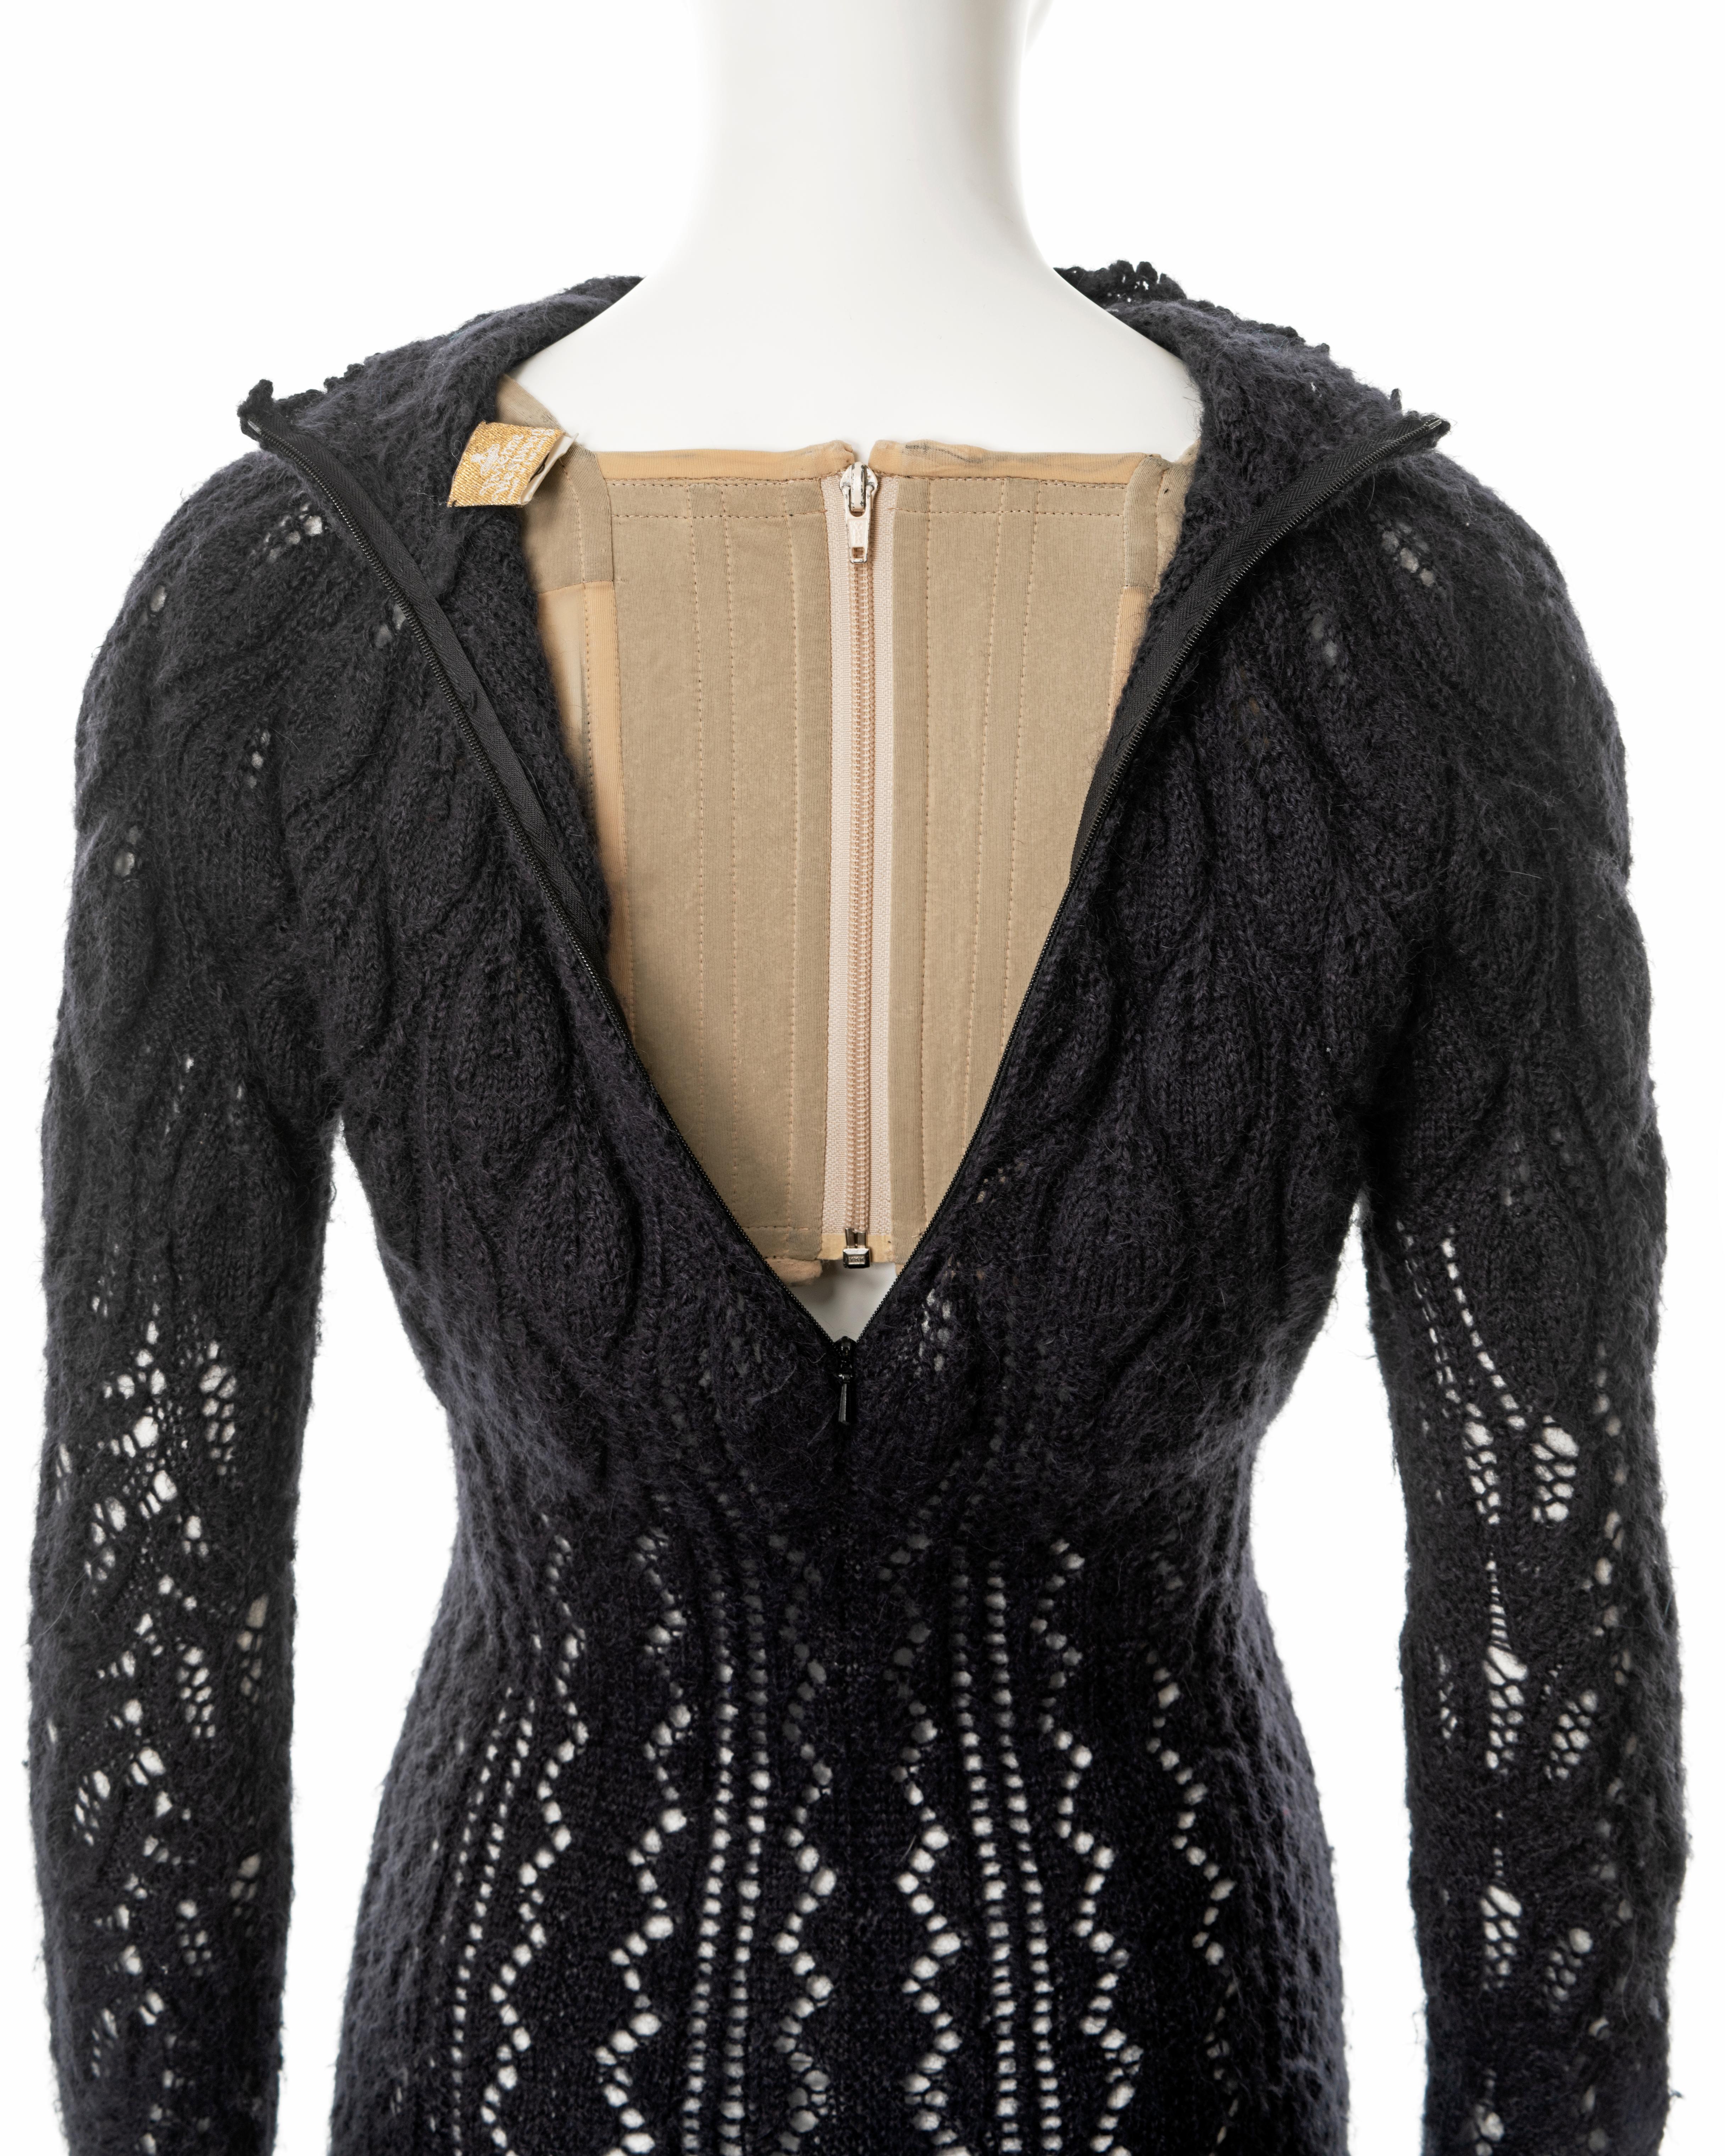 Vivienne Westwood steel-grey open knit alpaca wool corseted mini dress, fw 1993 For Sale 5